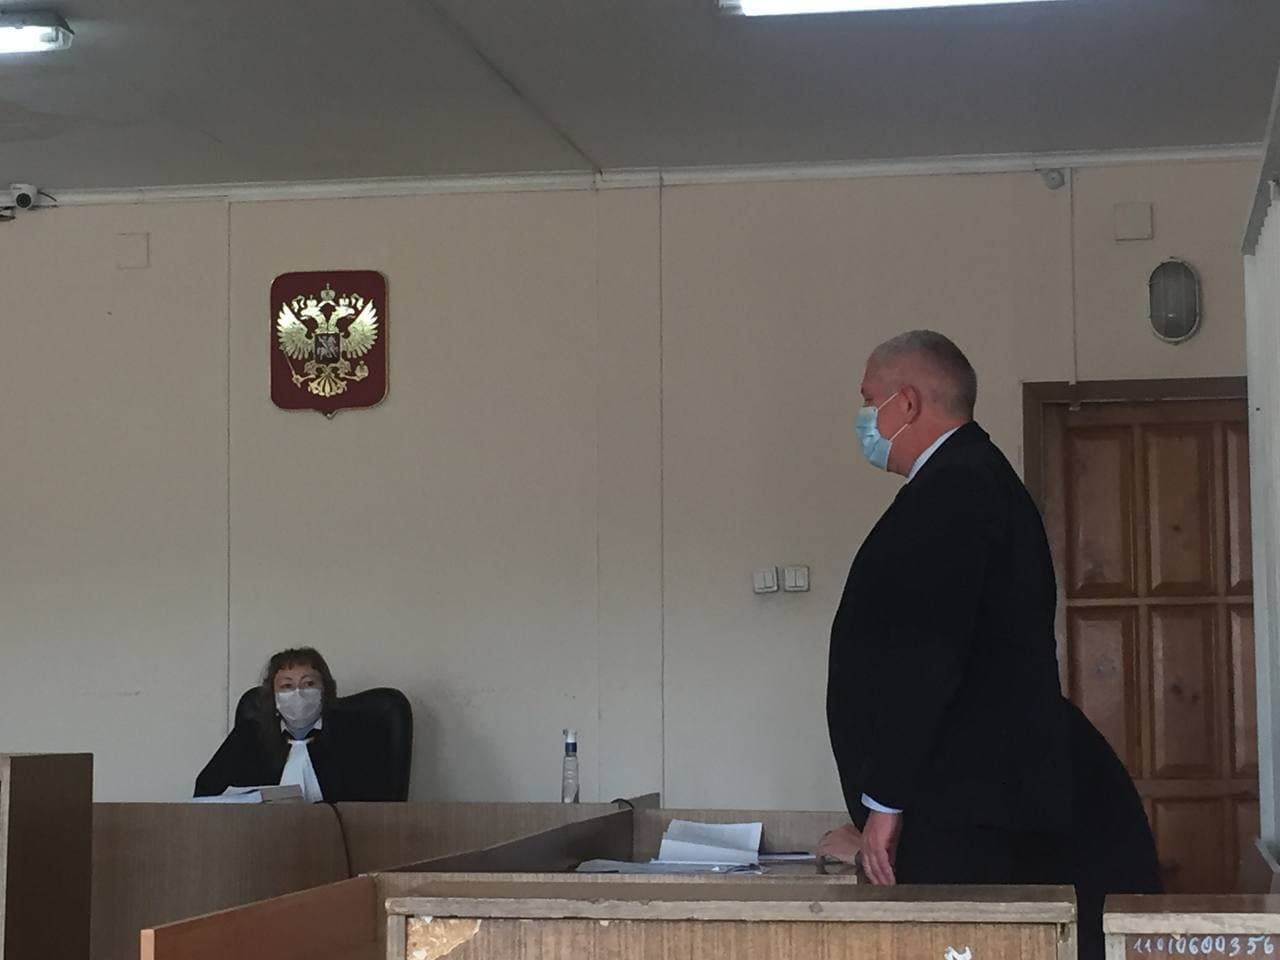 Дело экс-главрача инфекционной больницы Юрчука, обвиняемого в получении взятки, — подробности с судебного заседания 